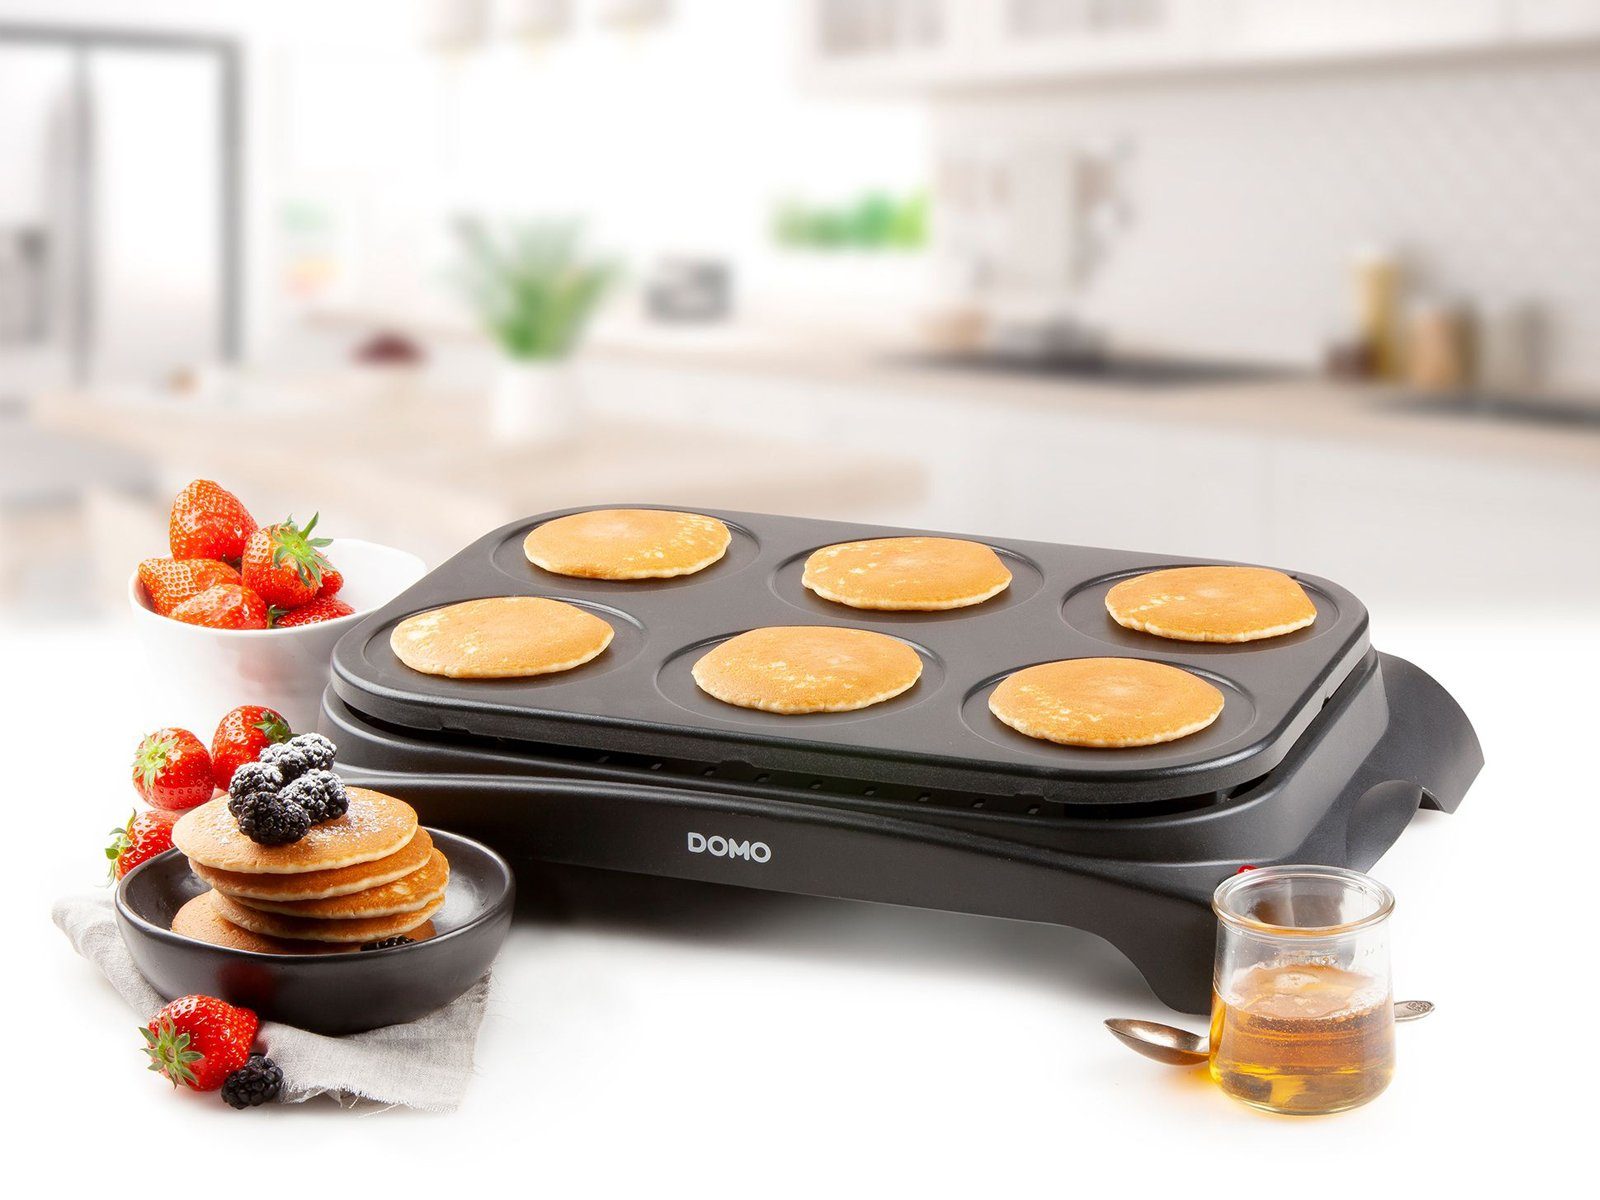 Domo Crêpesmaker, 1000 W, Ø 11.5 cm, 6 süße salzige Pancake Pfannkuchen  selber machen Crepes-Eisen Creperie, Backplatte mit erhöhten Rand um ein  Überlaufen des Teigs zu verhindern